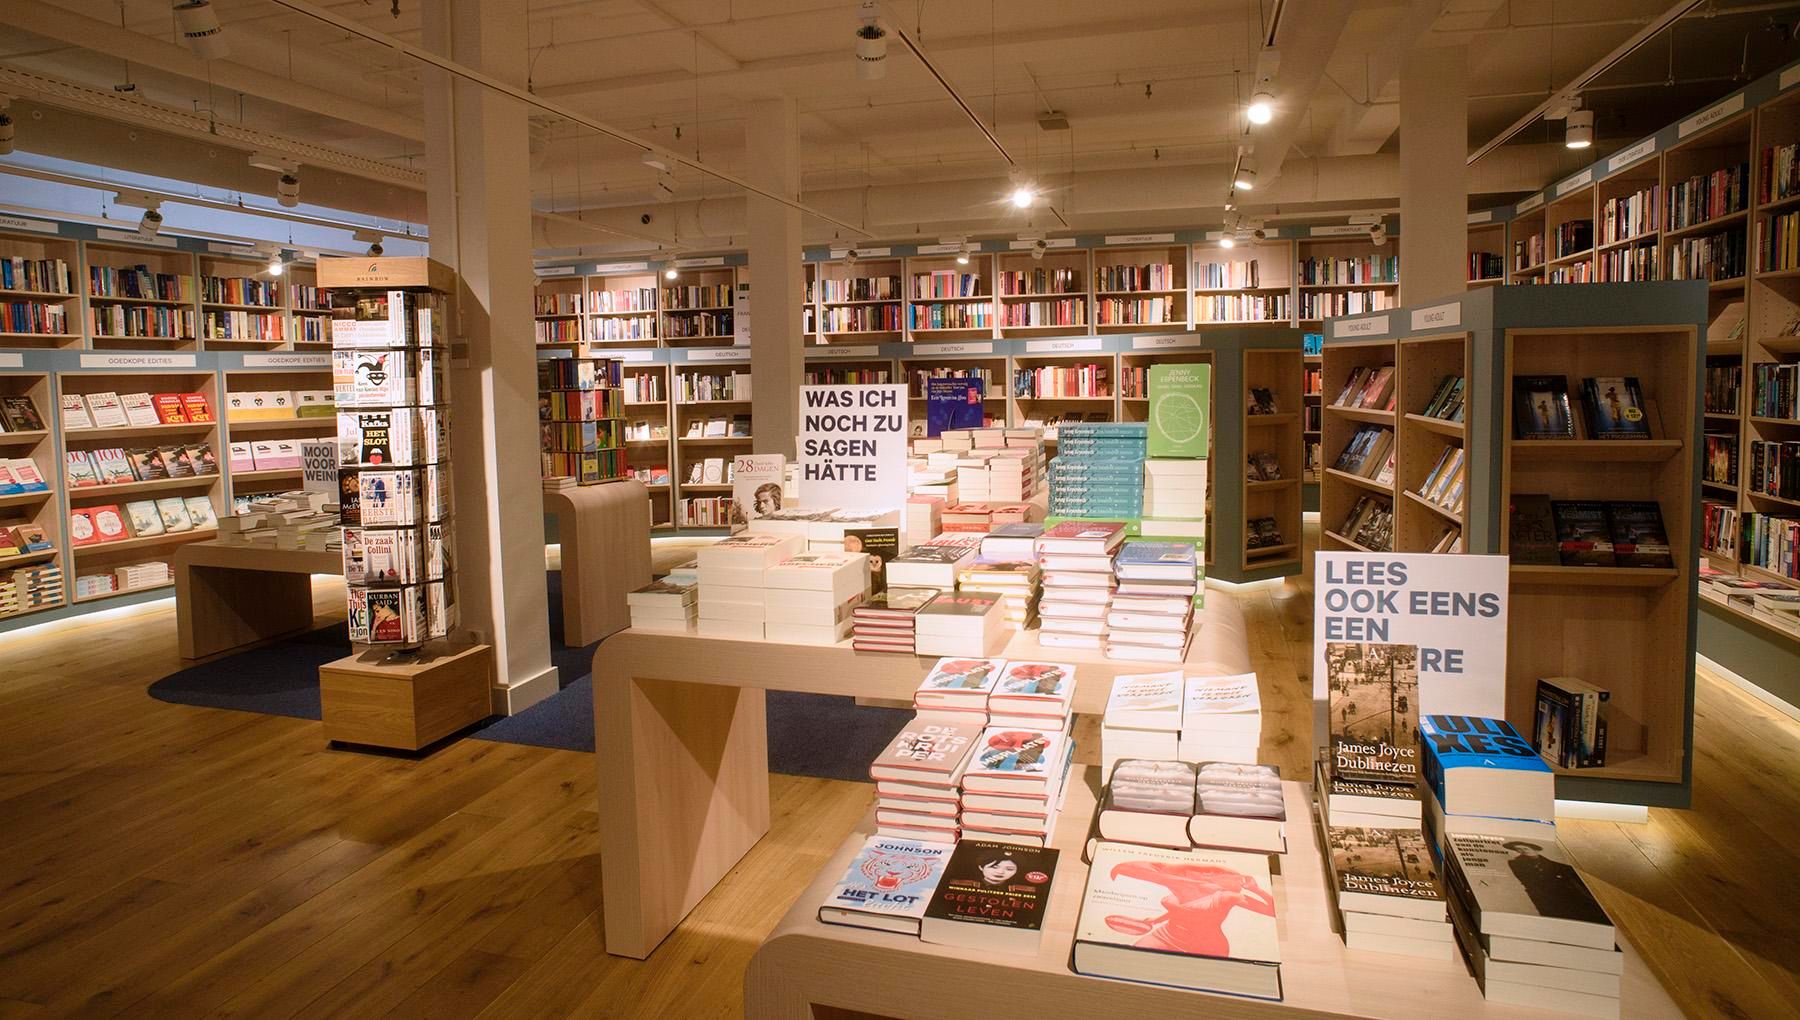 Straat Beschrijven Stun De meest bijzondere boekenwinkels | I amsterdam